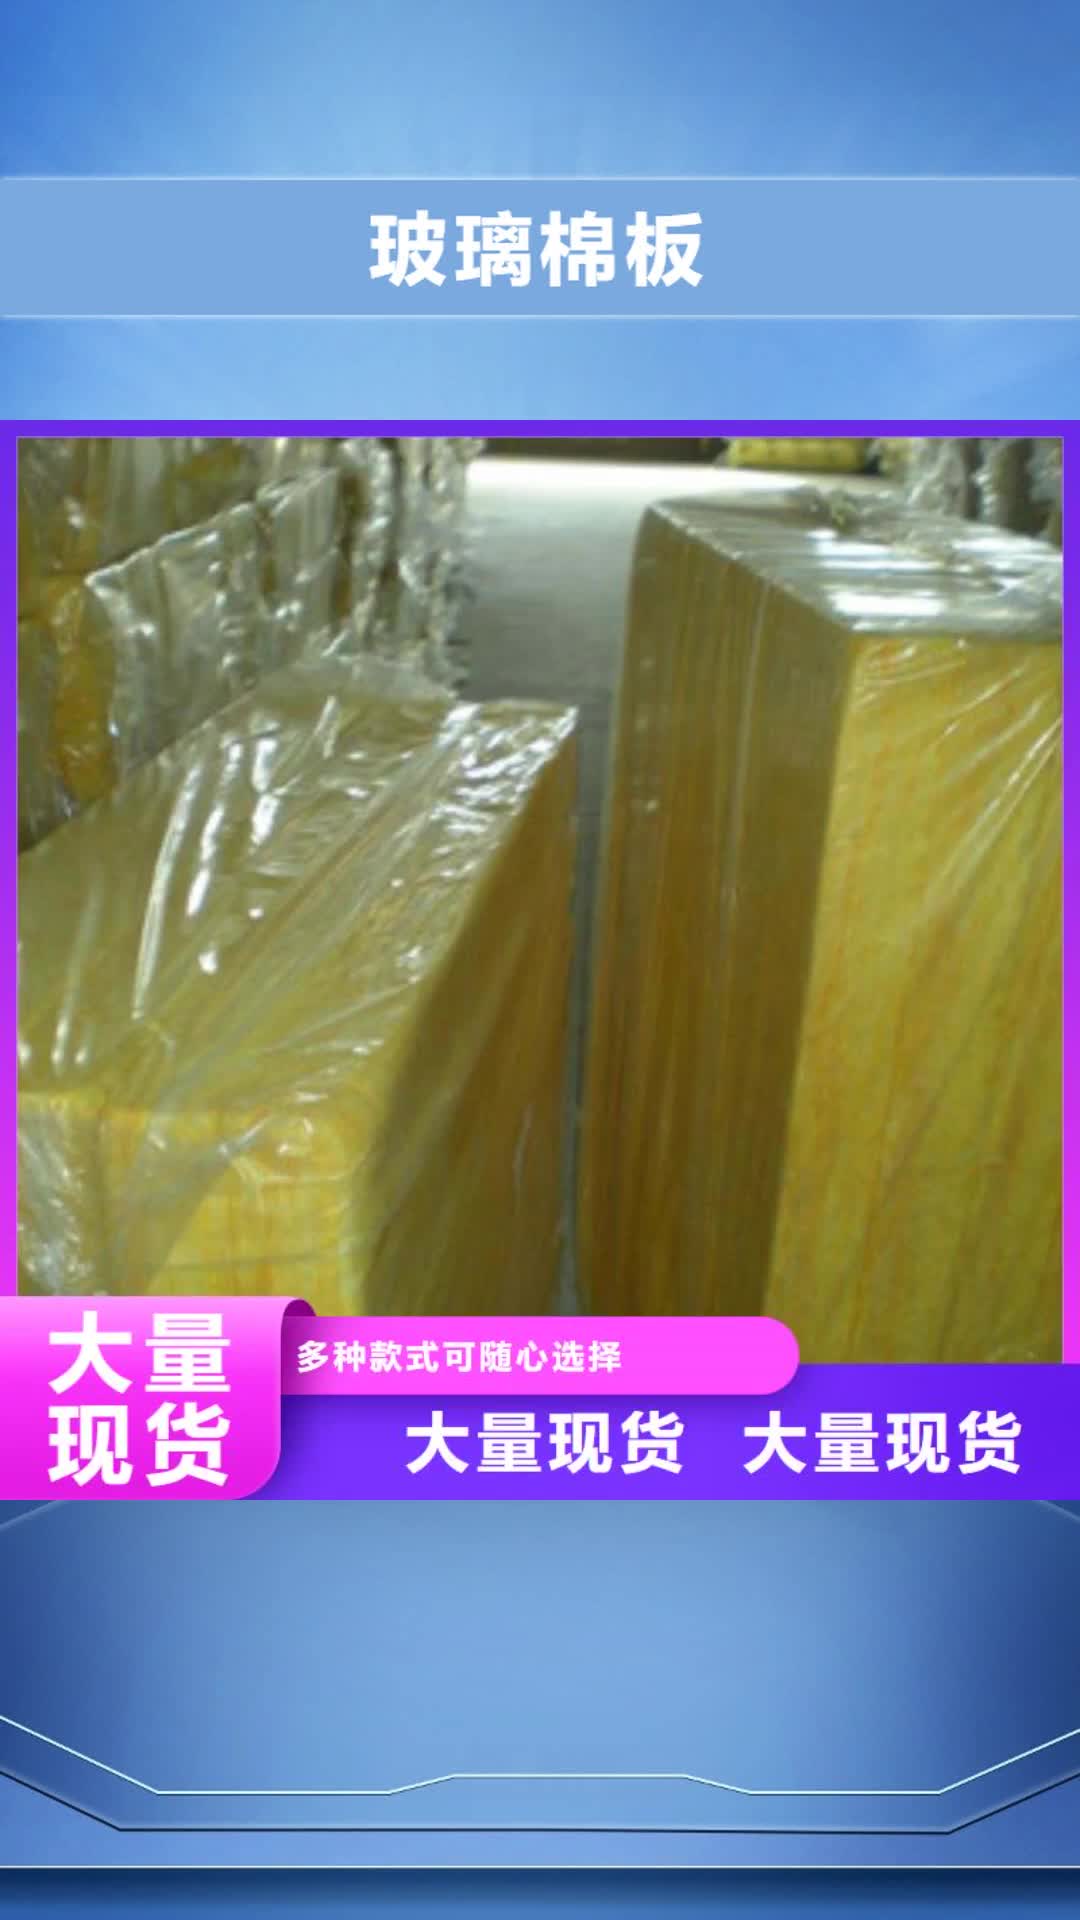 贵港【玻璃棉板】 橡塑板厂家品牌企业